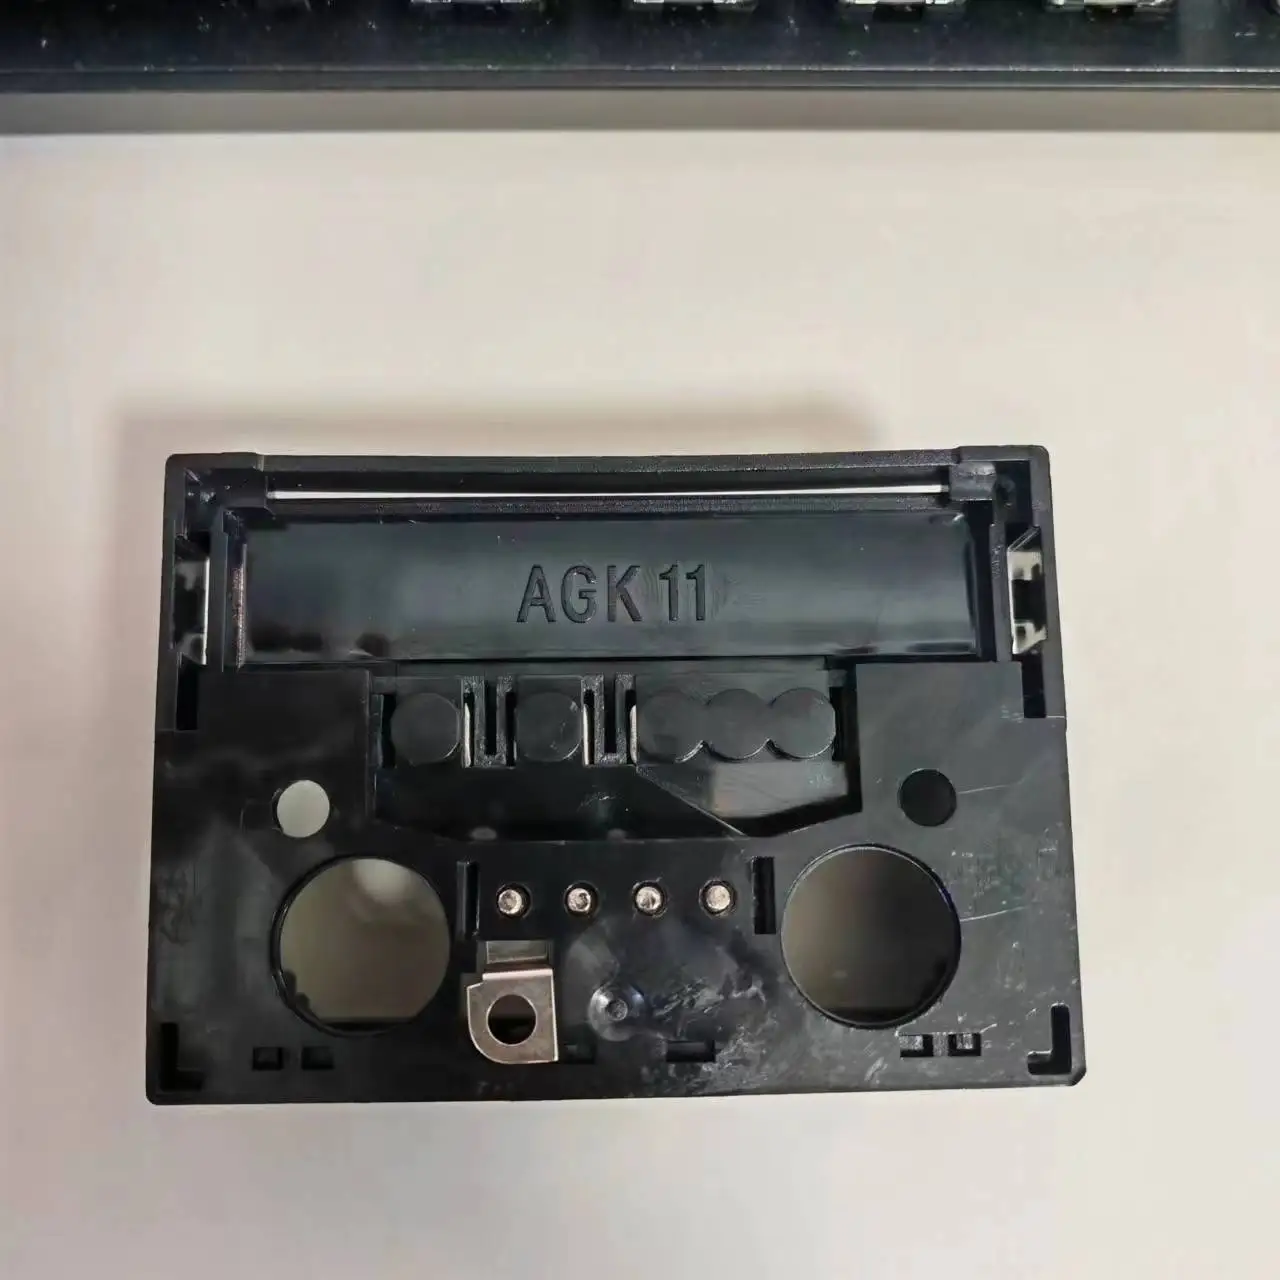 База контроллера горелки AGK11 Программируемый контроллер Распределительная коробка LME21 LMG LGB LOG LOA24 22 Изображение 1